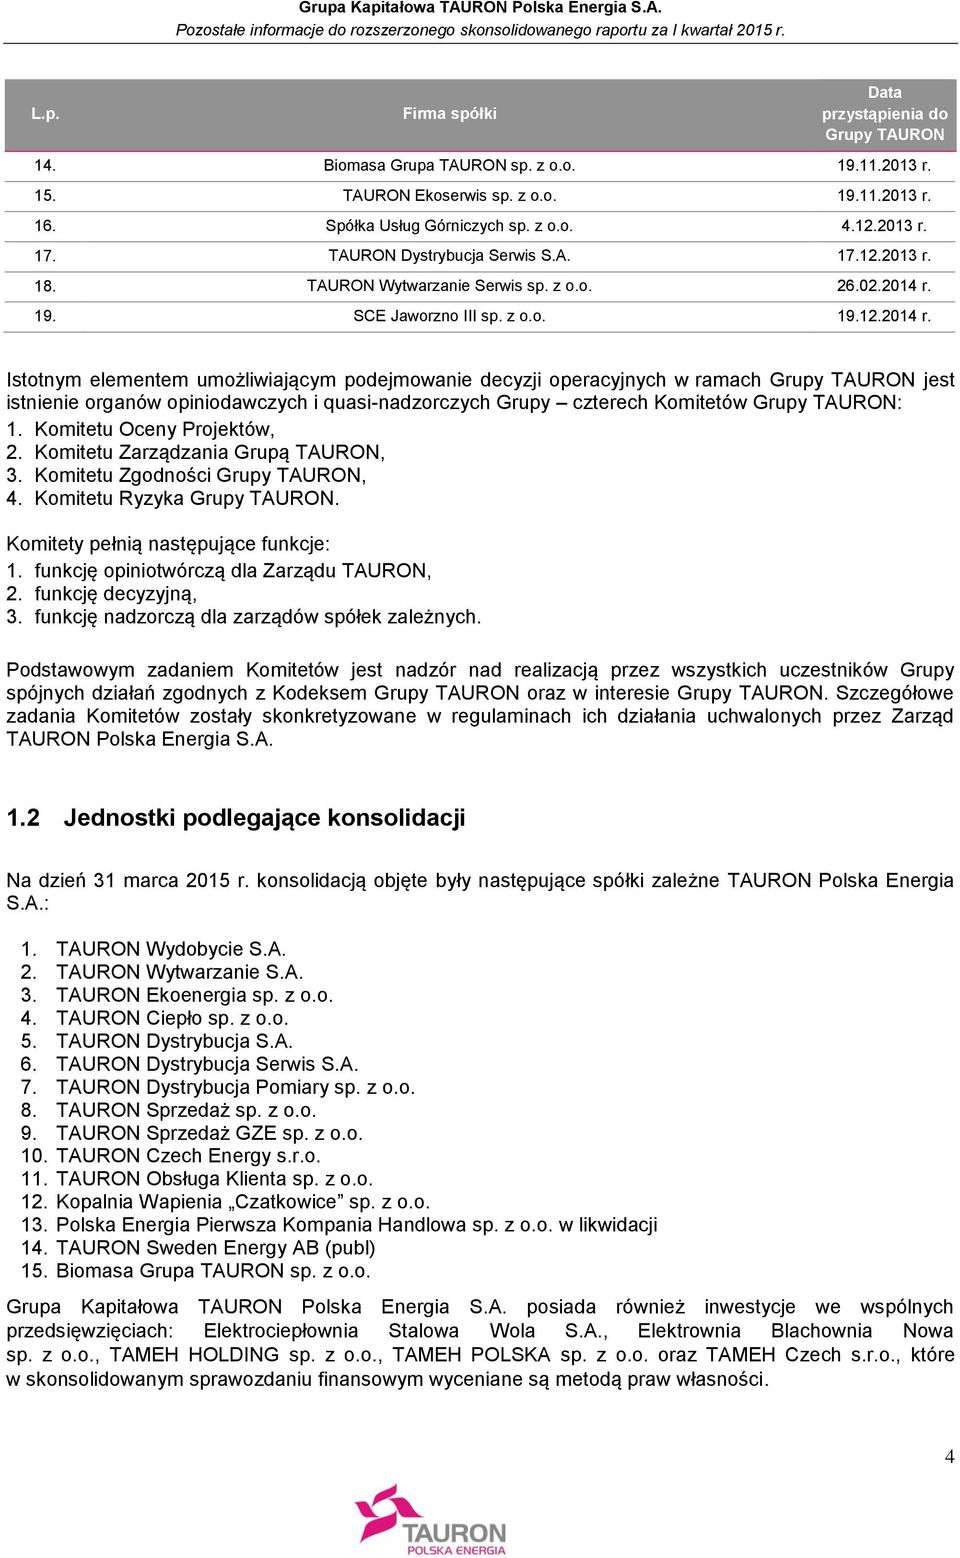 19. SCE Jaworzno III sp. z o.o. 19.12.2014 r.